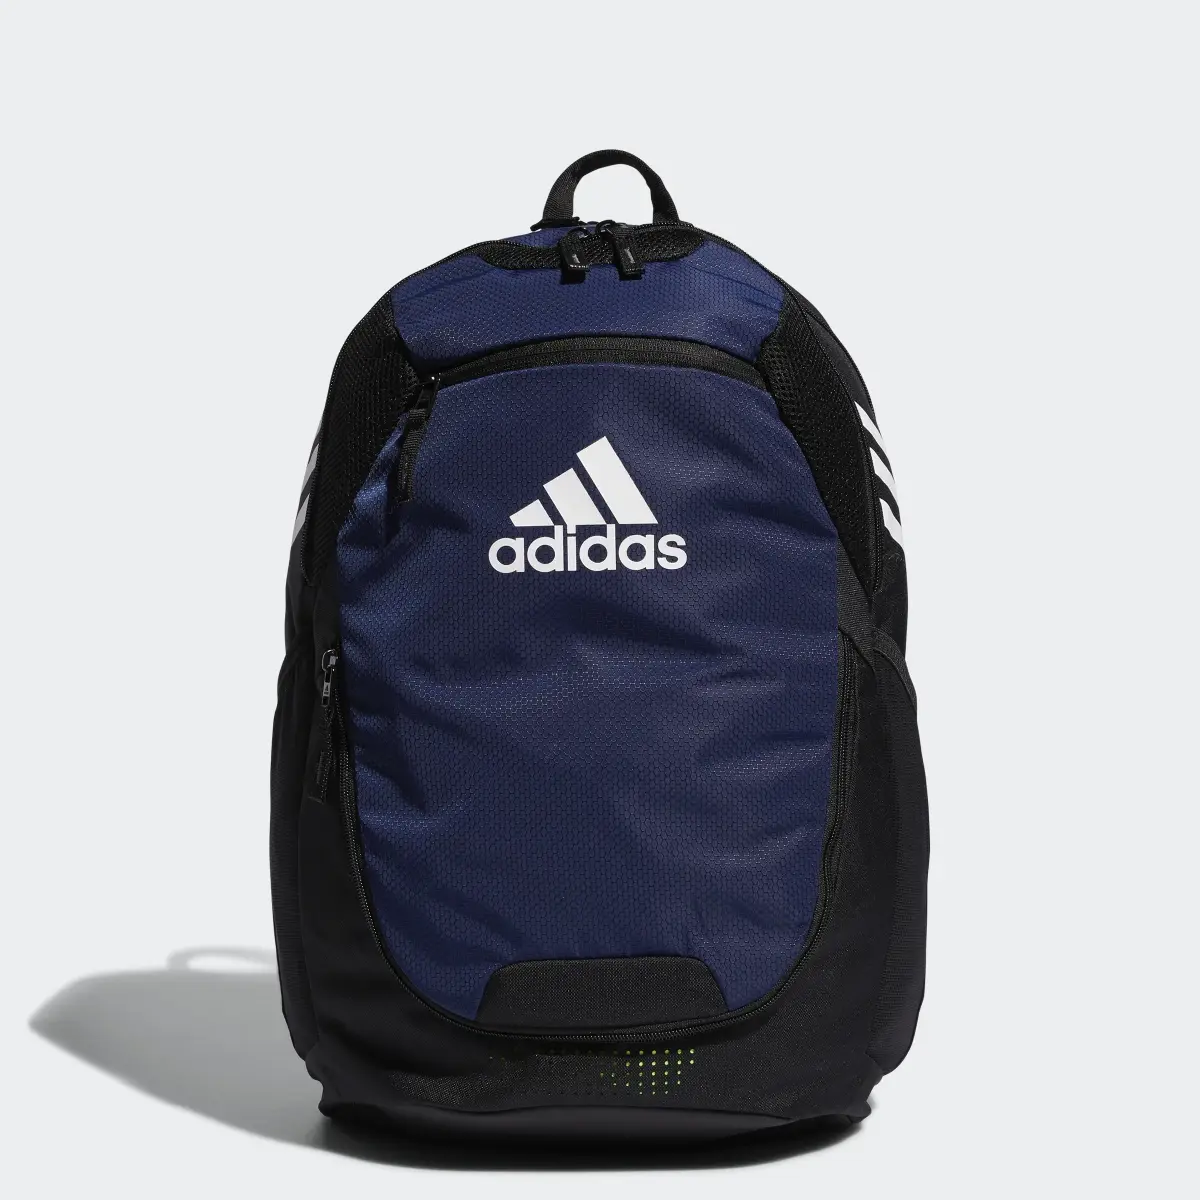 Adidas Stadium Backpack. 1